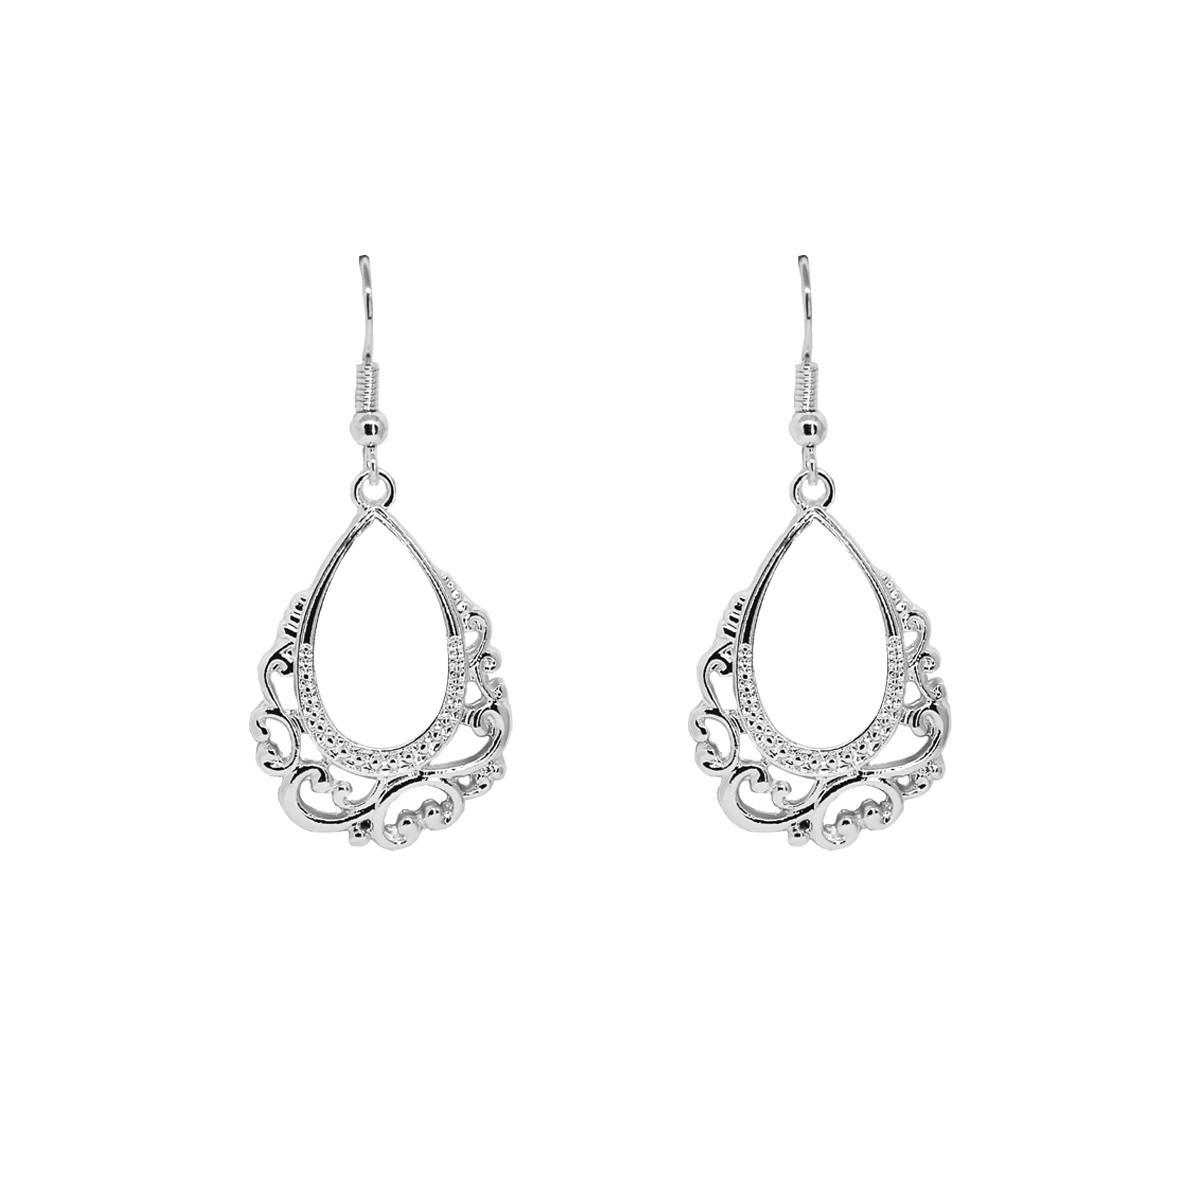 Drop Earrings in Silver - Hutch.pk Online Fashion Store in Pakistan